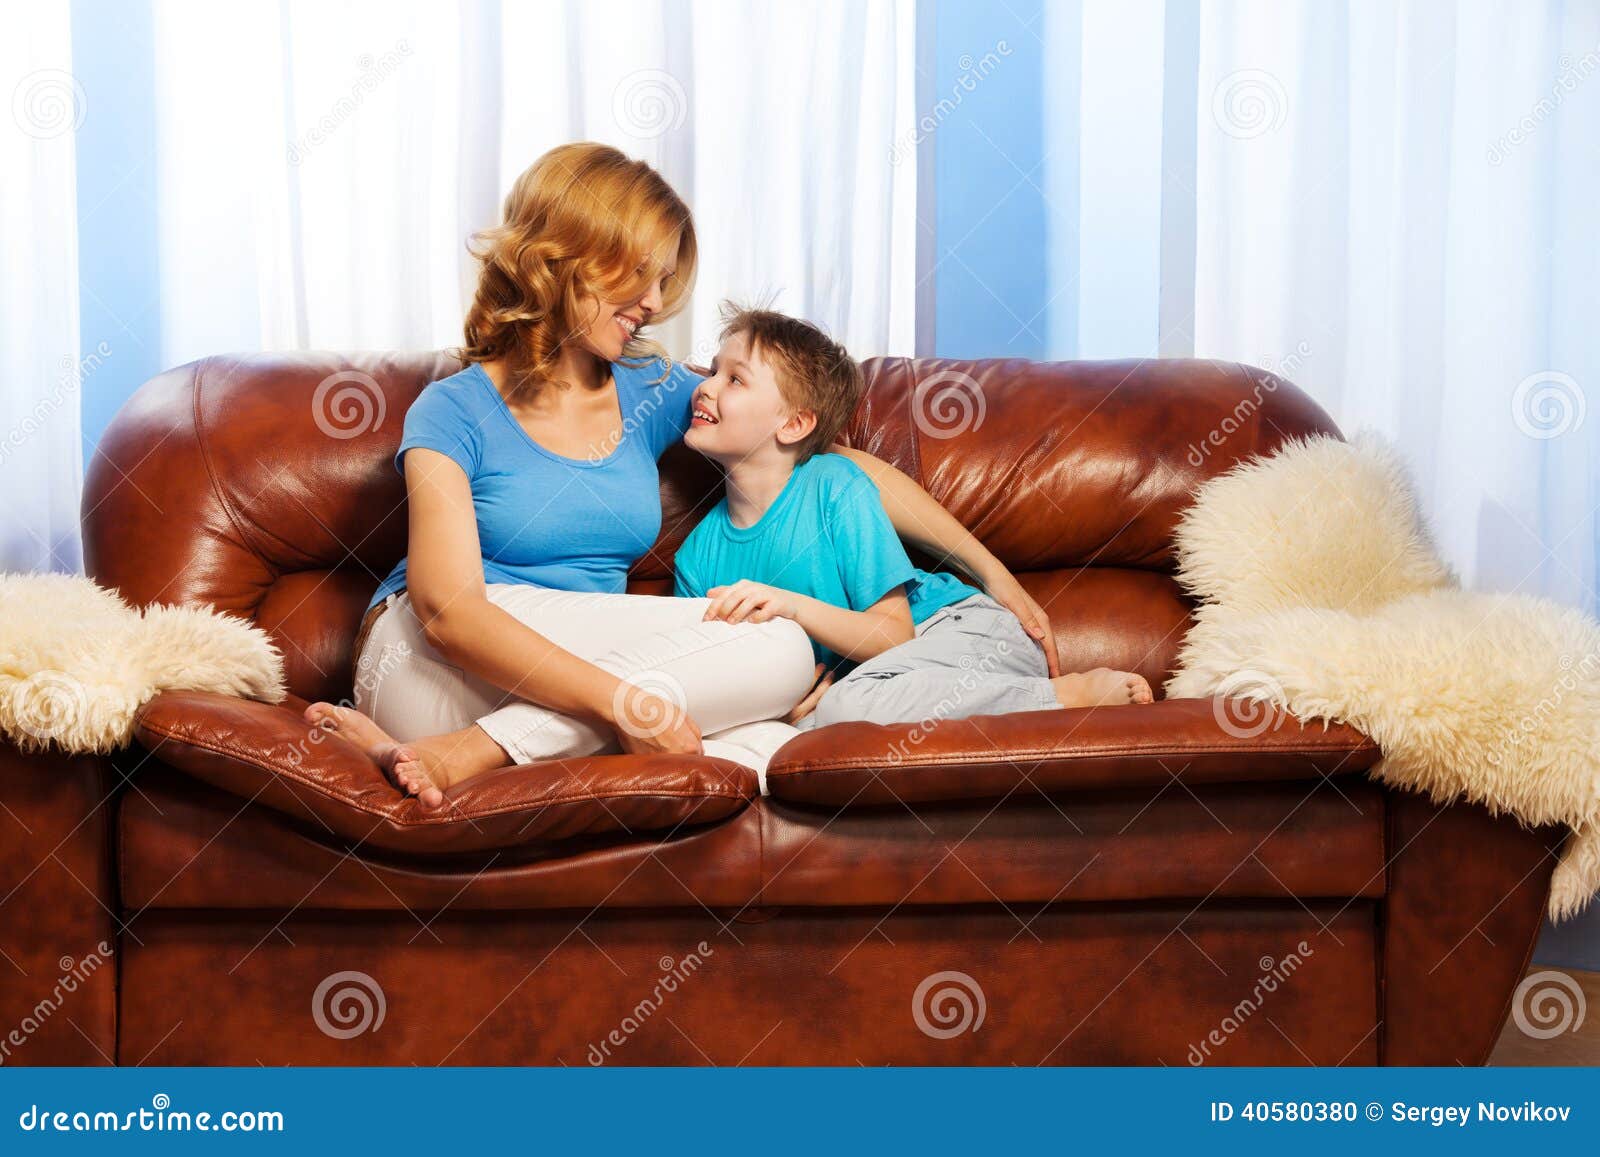 Маму на диване видео. Мама с ребенком на диване. Мама с ребенком сидит на диване. Фотосессия ребенка и мамы на диване.